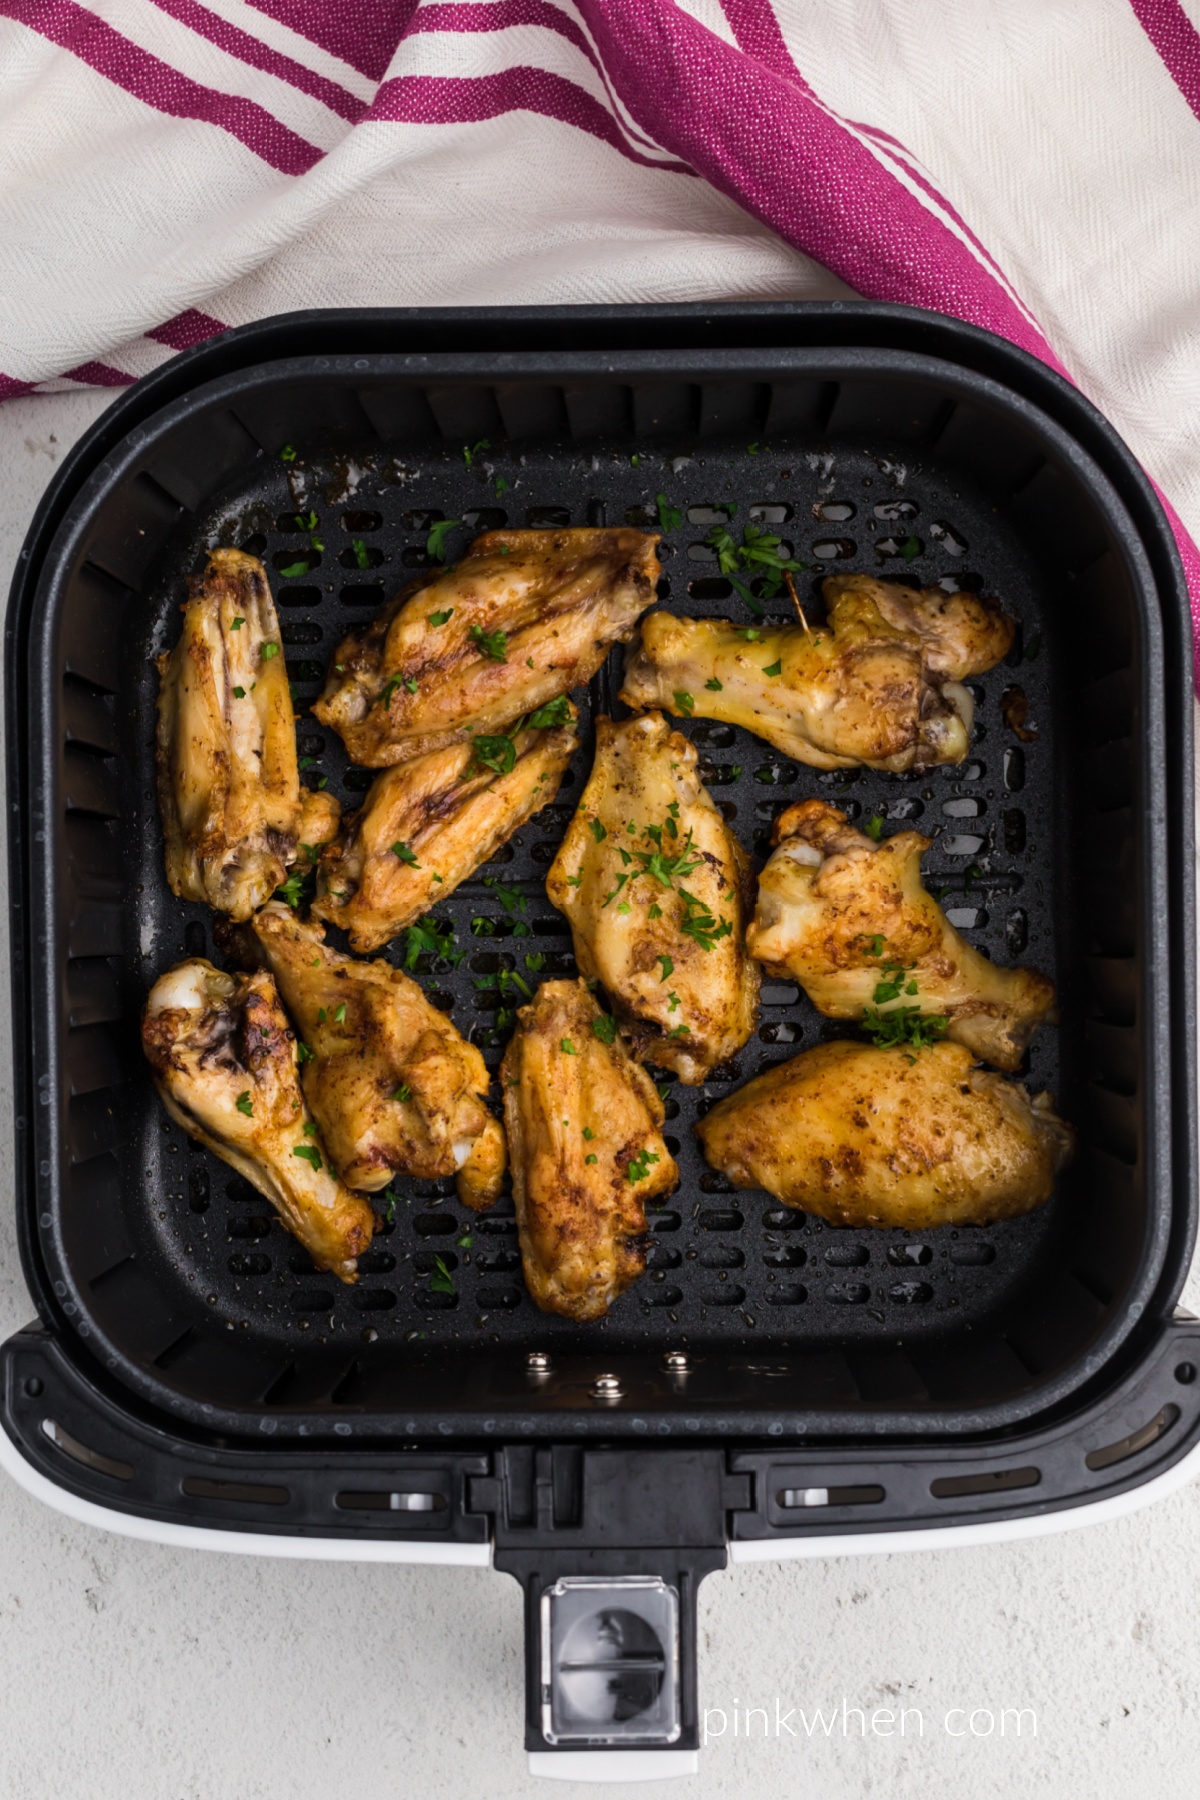 Seasoned chicken wings in the basket of the air fryer.